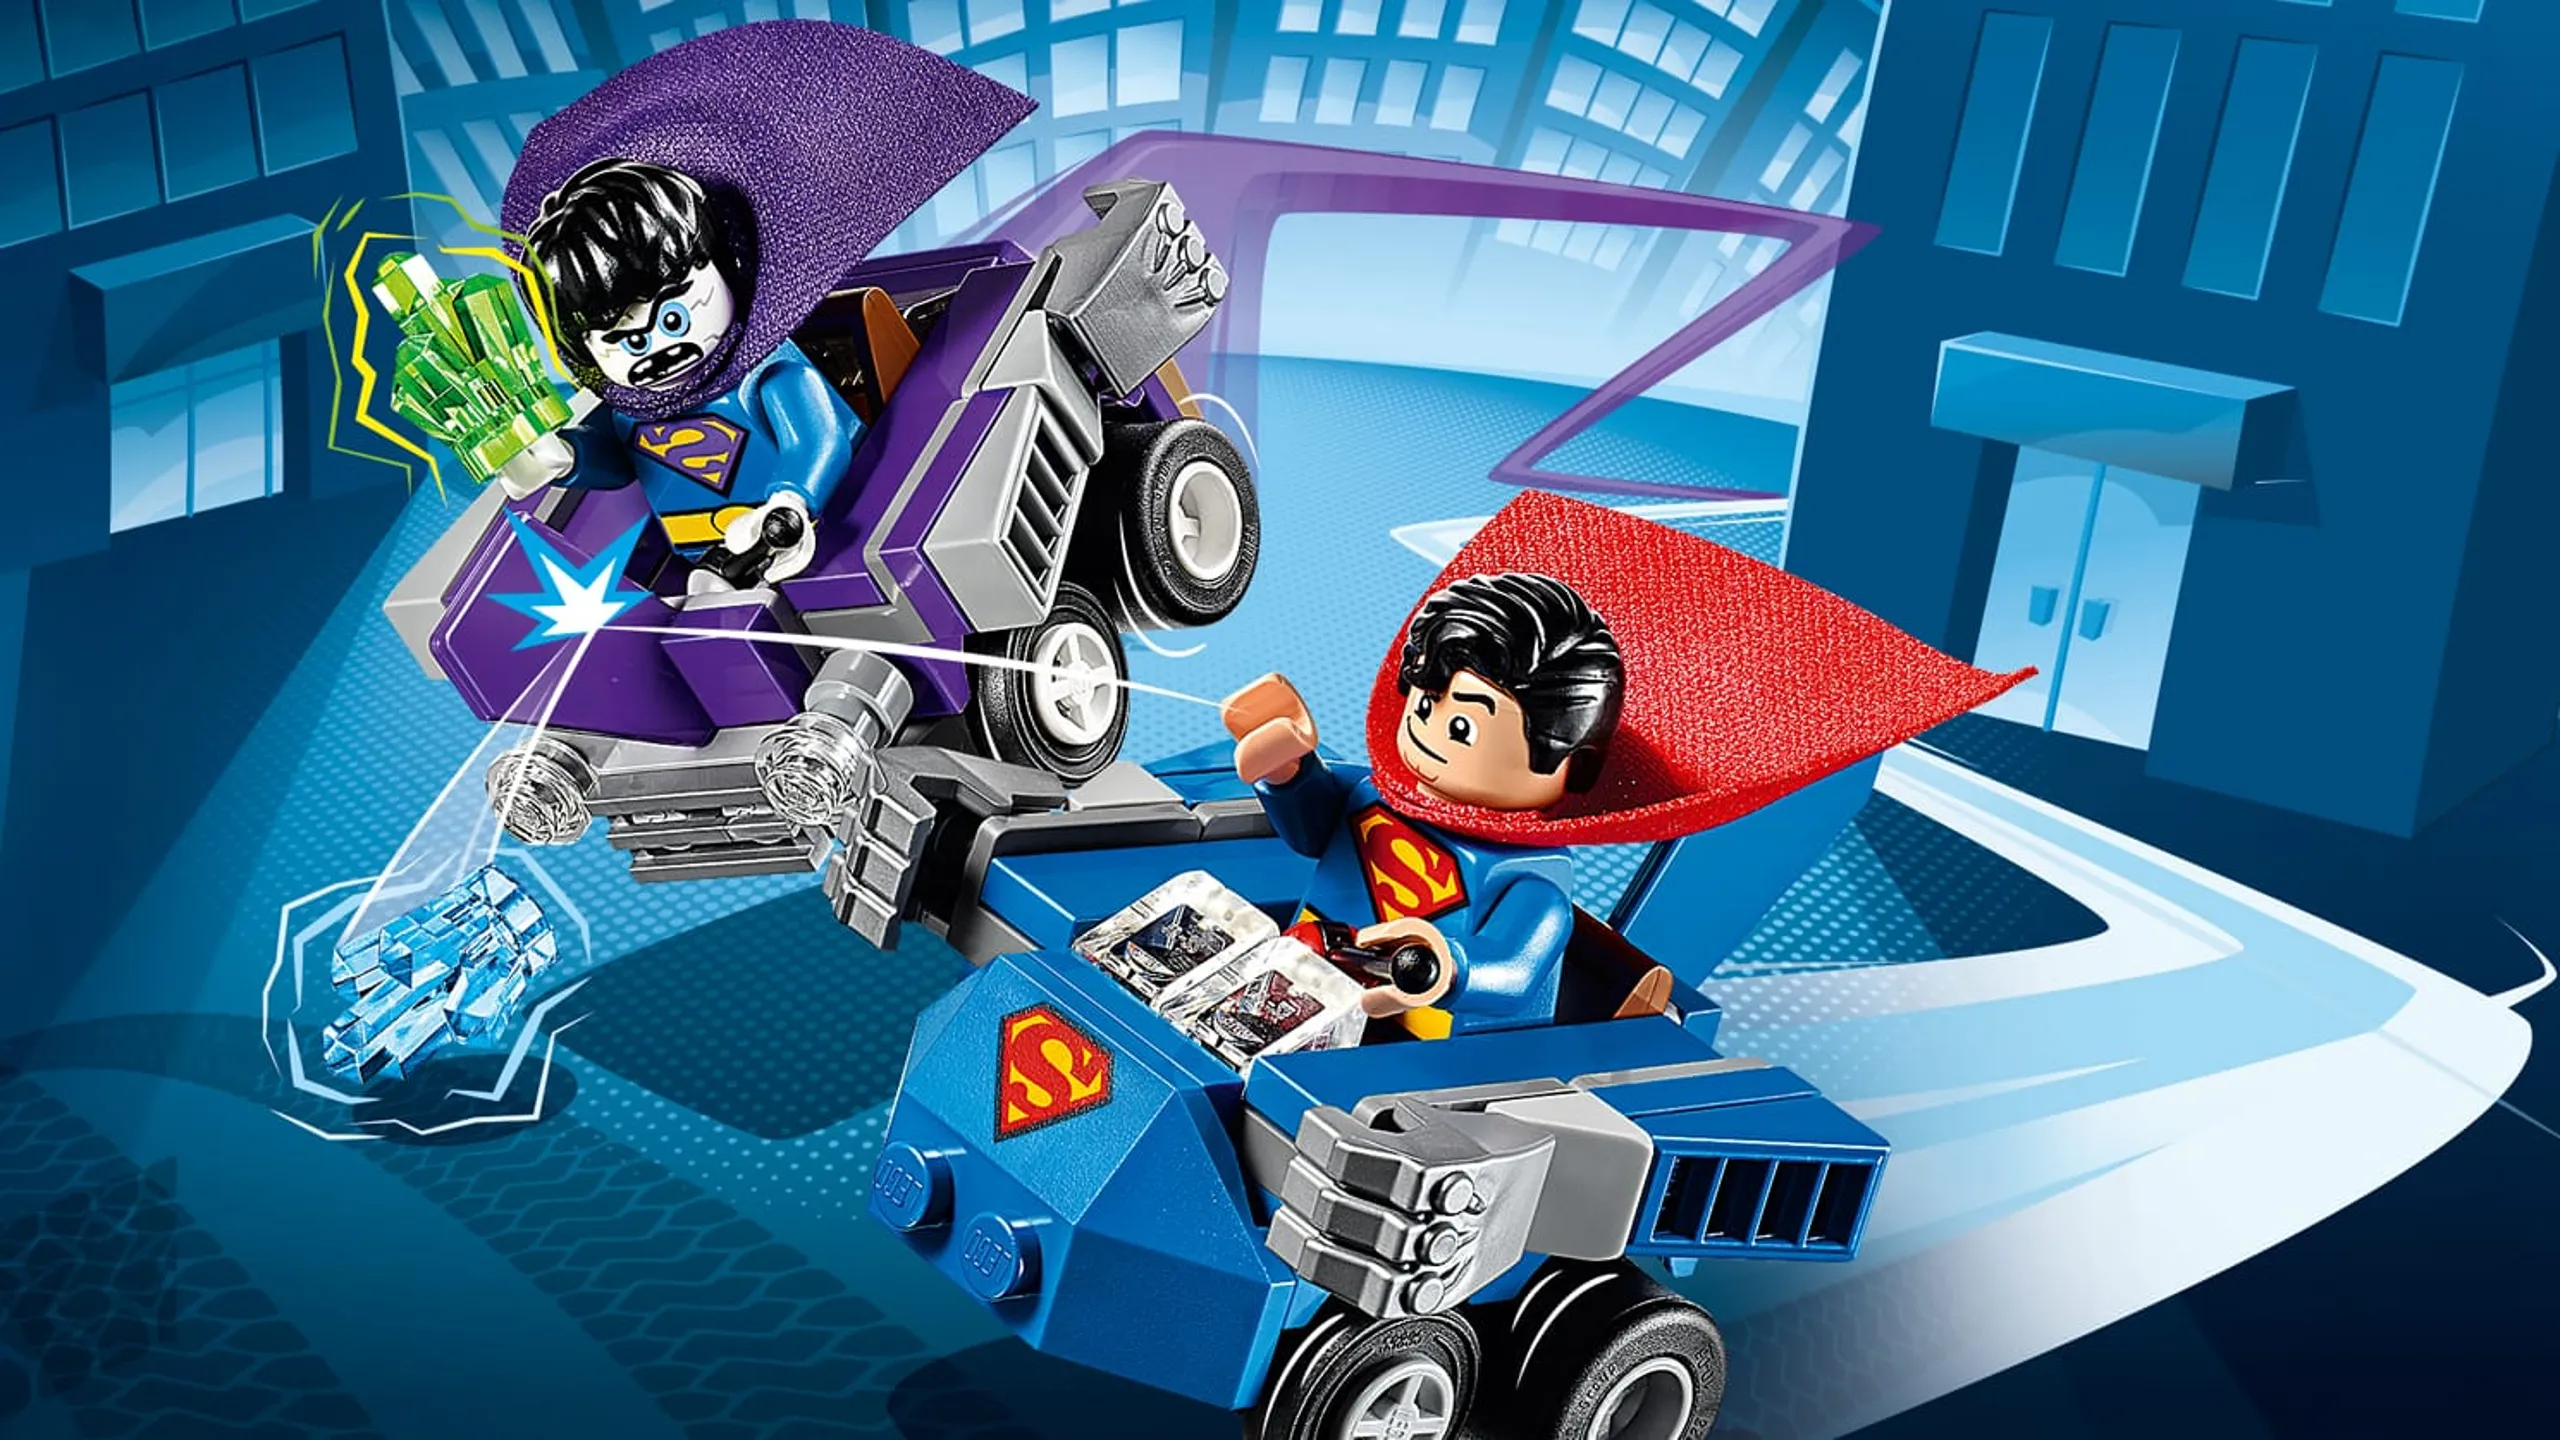 LEGO unveils a 3,981-piece Batman Returns Batcave